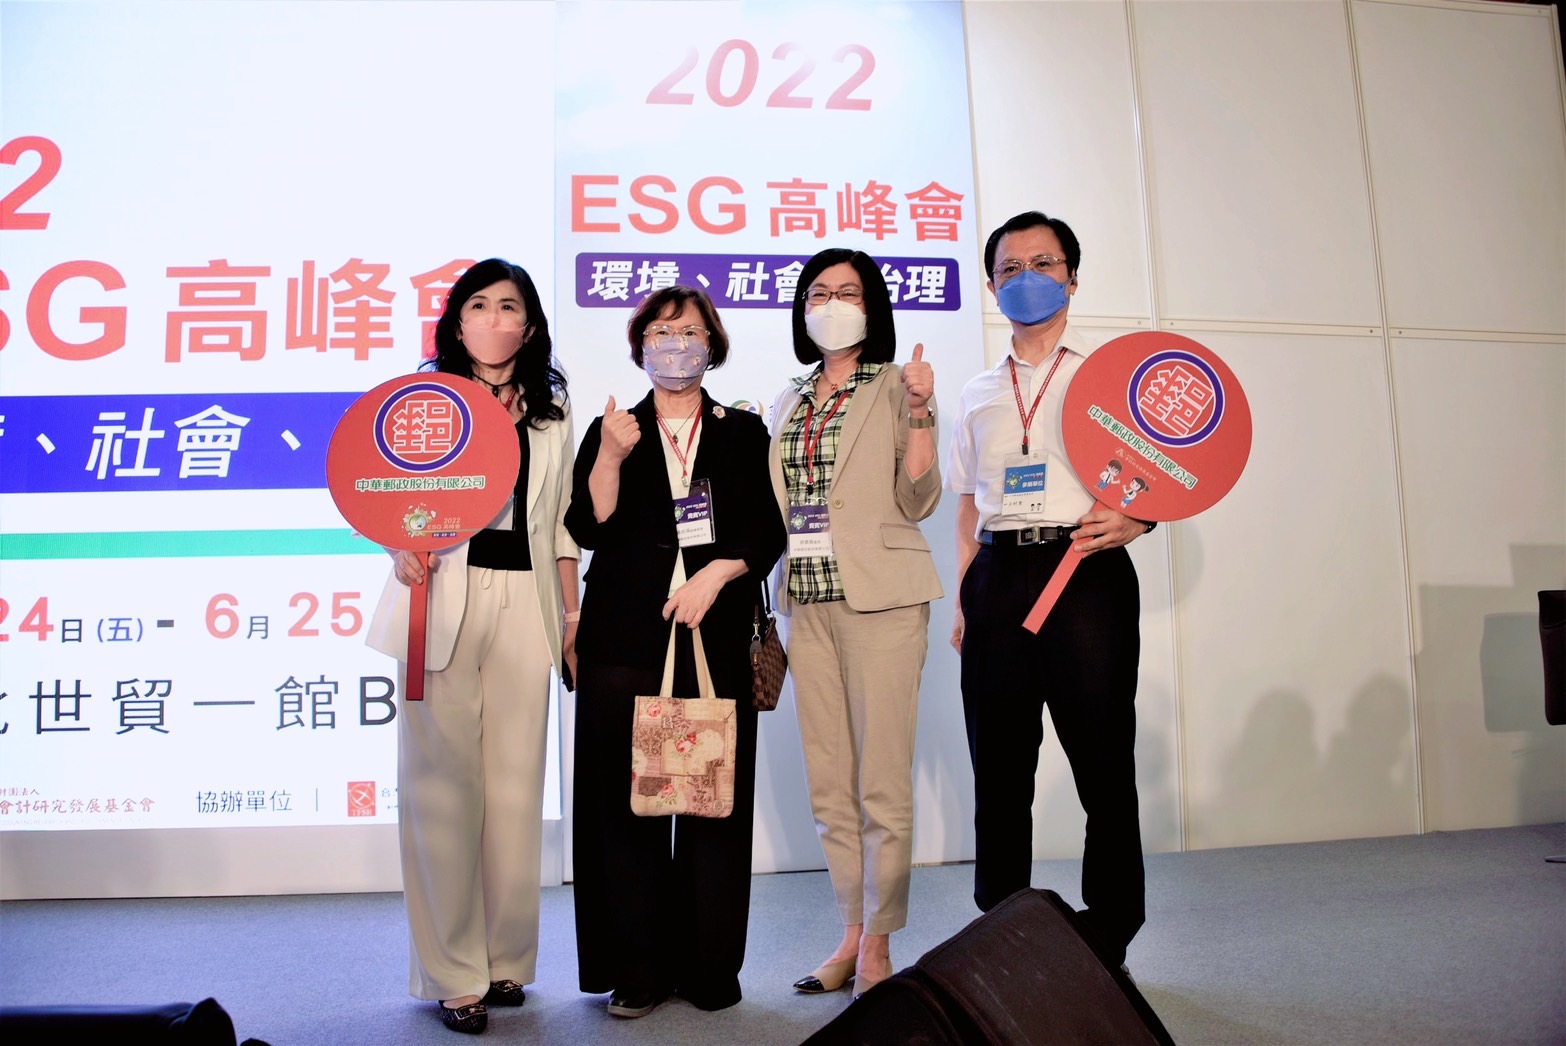 中華郵政 美好永續 2022ESG高峰會展現多元成果